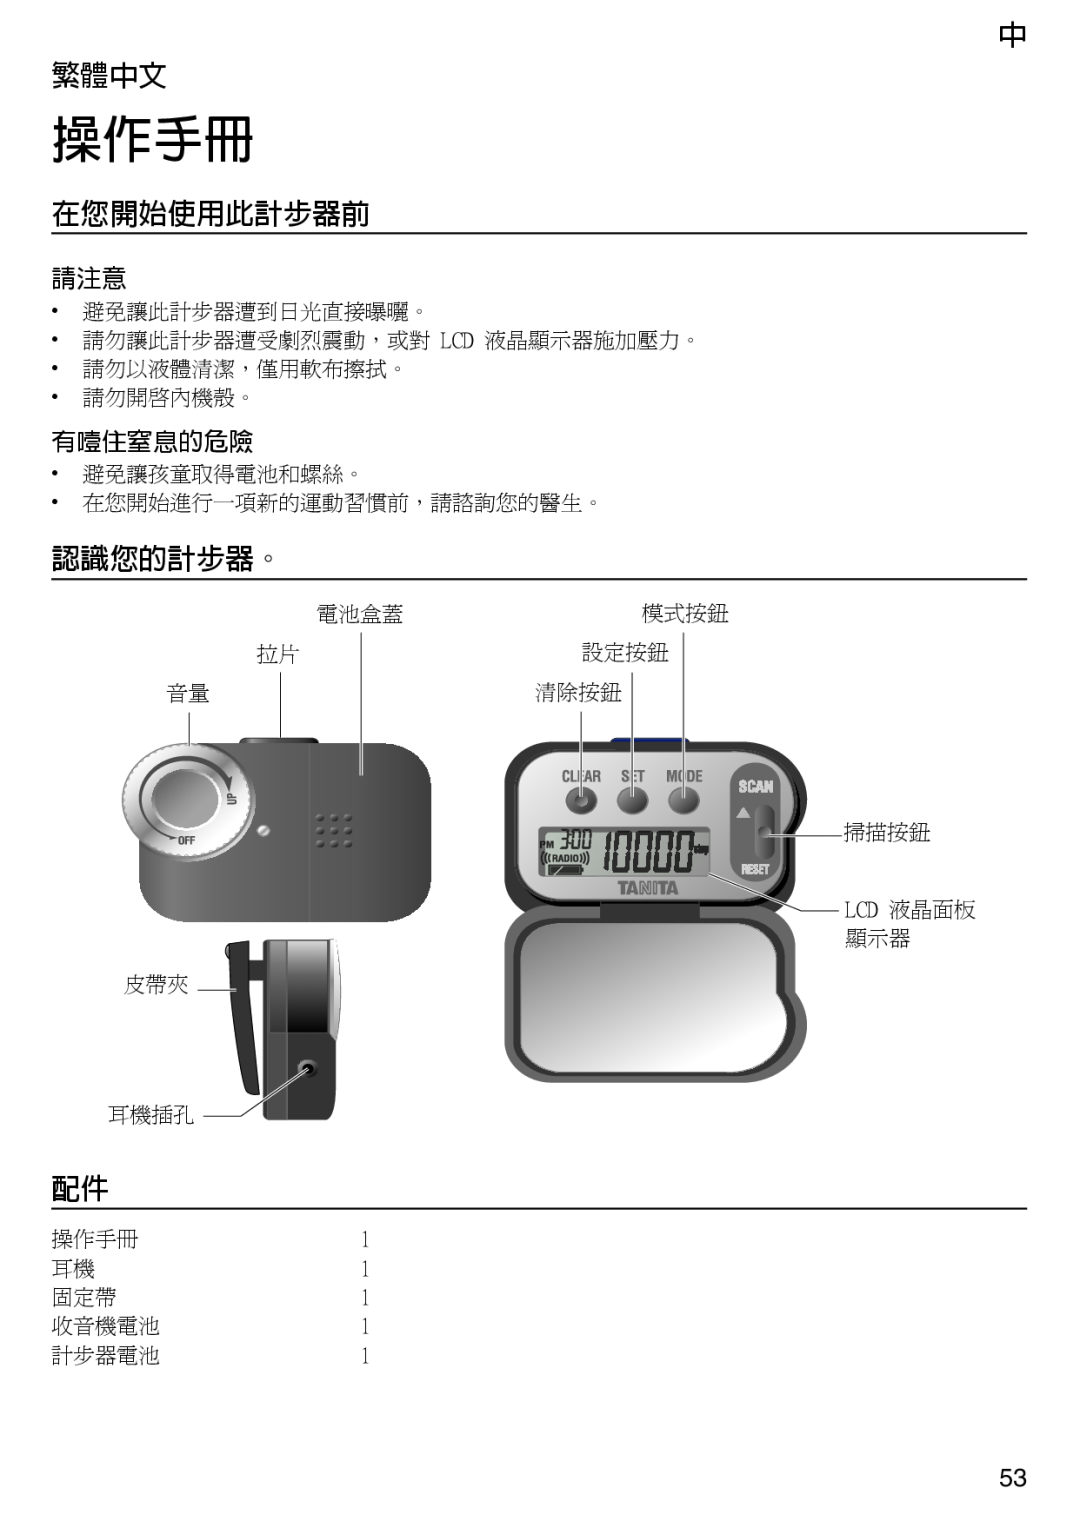 Tanita PD640 instruction manual 中 繁體中文, 在您開始使用此計步器前, 認識您的計步器。, 有噎住窒息的危險, 操作手冊 